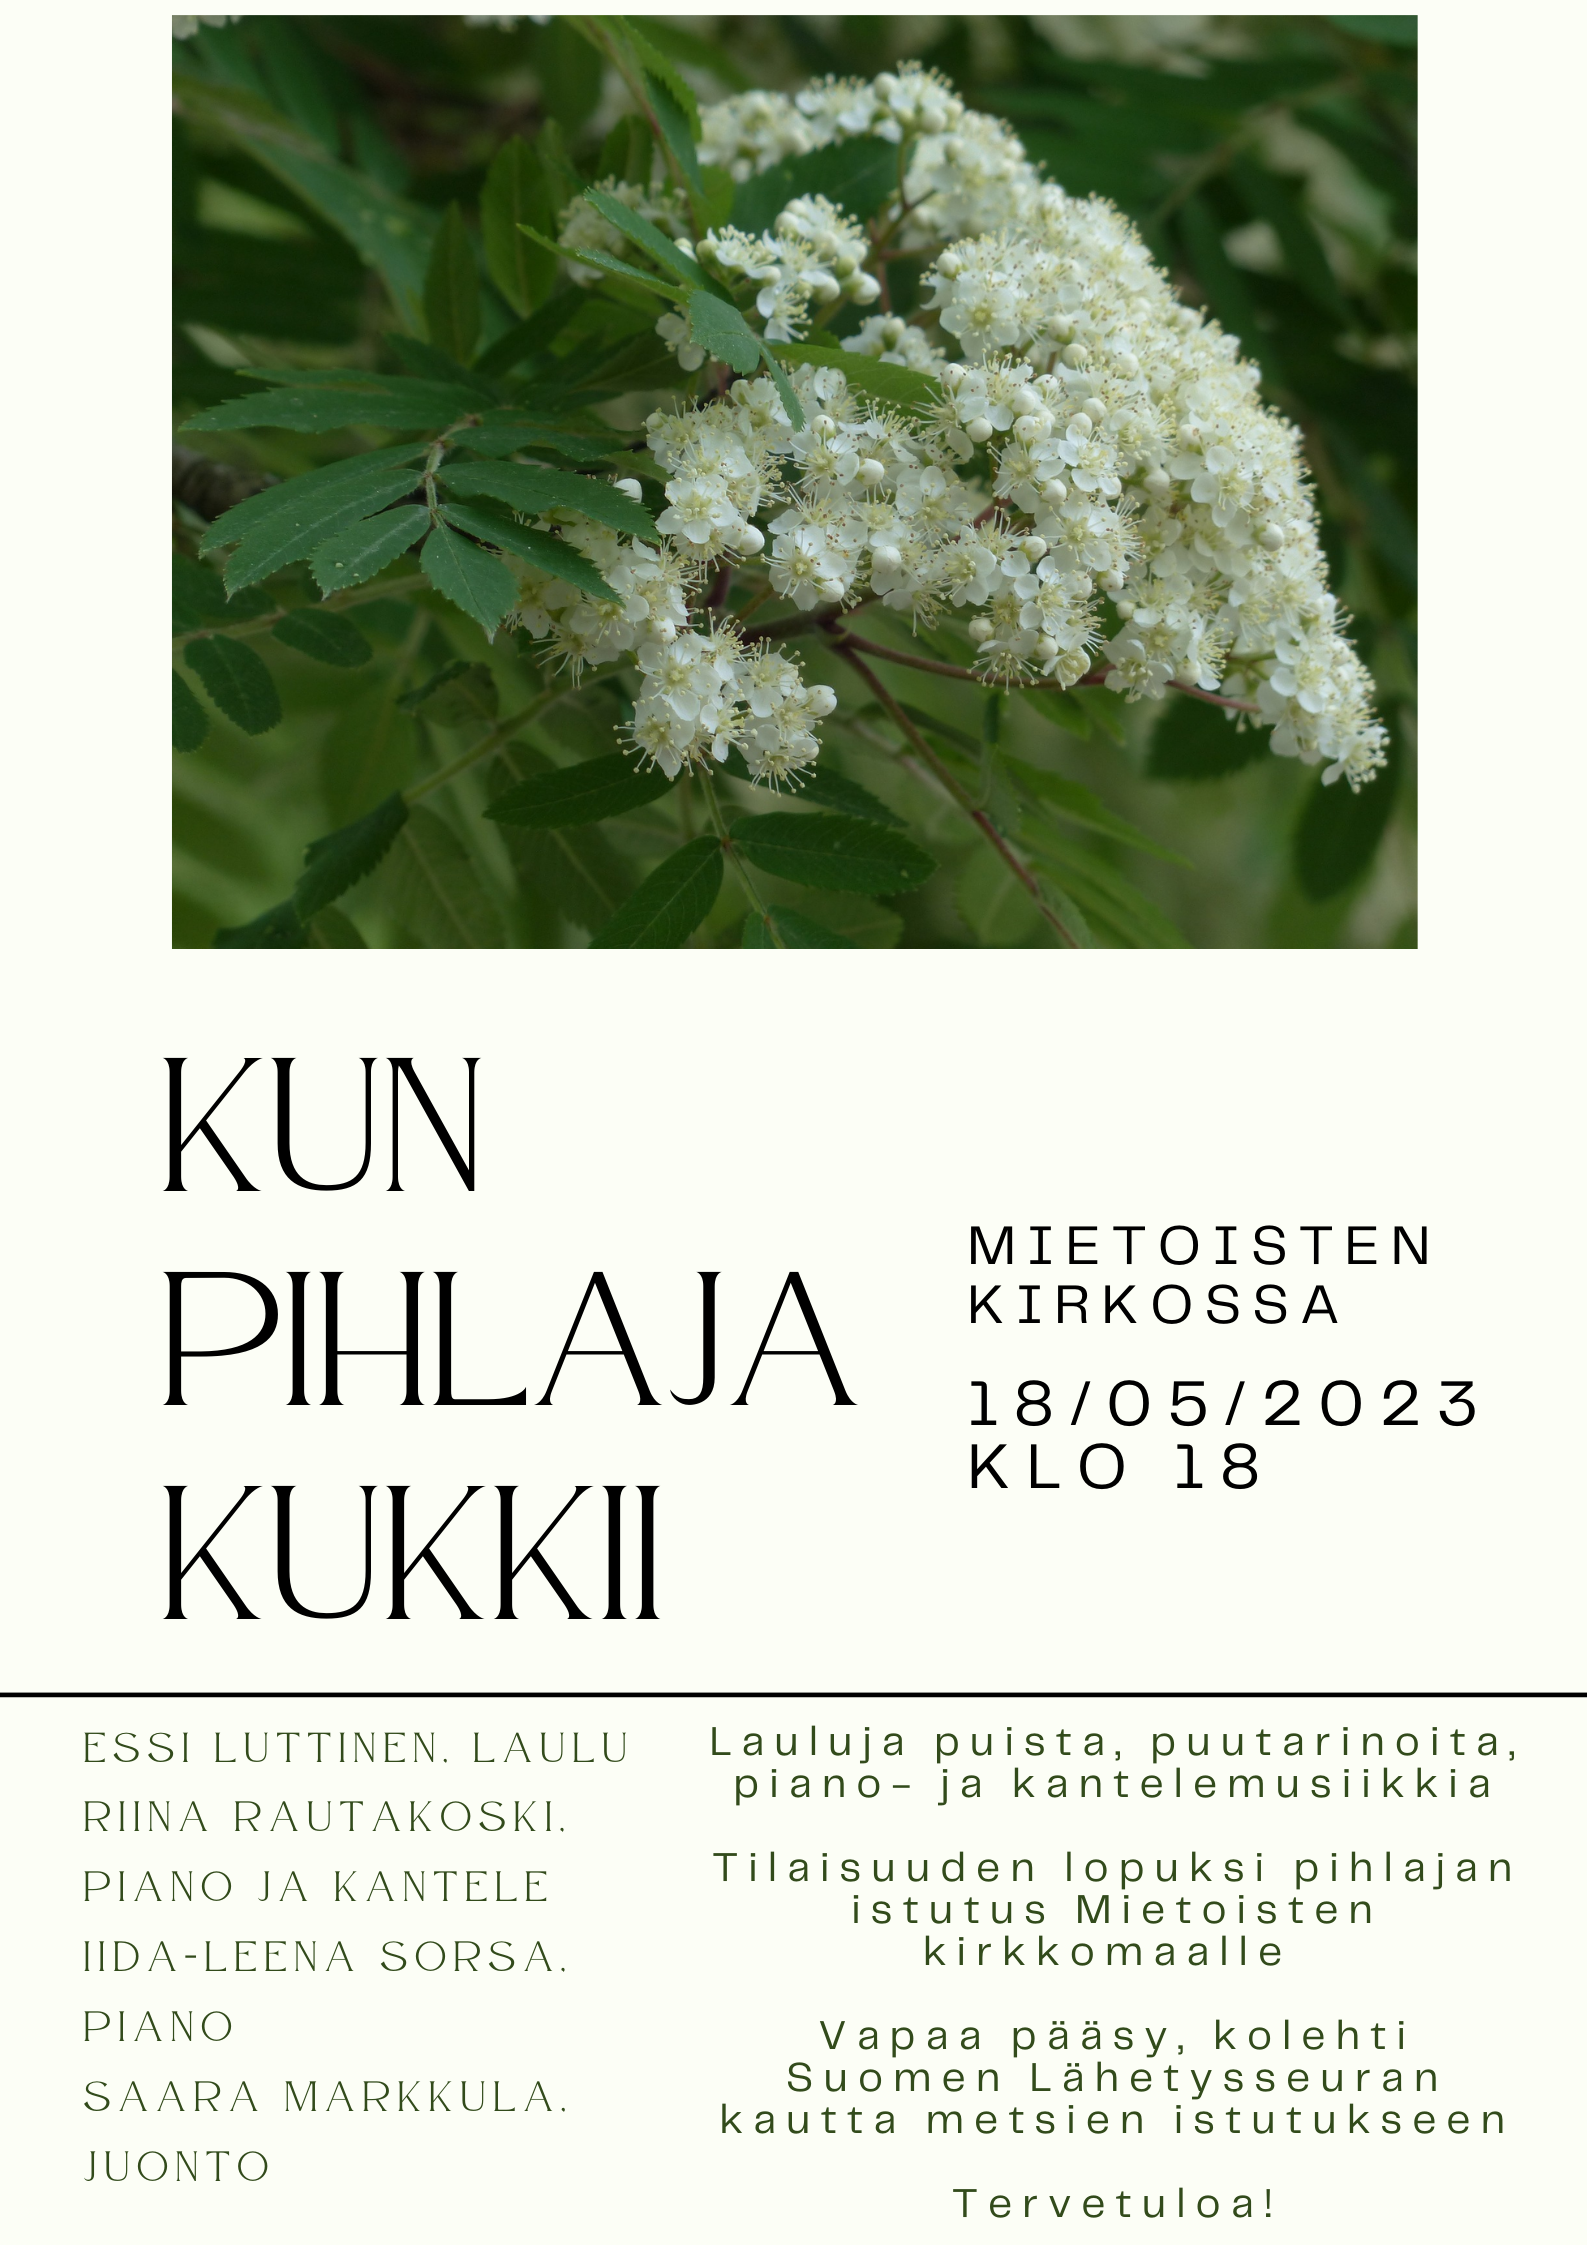 Kun pihlaja kukkii -konsertti Mietoisten kirkossa 18.5.2023 klo 18